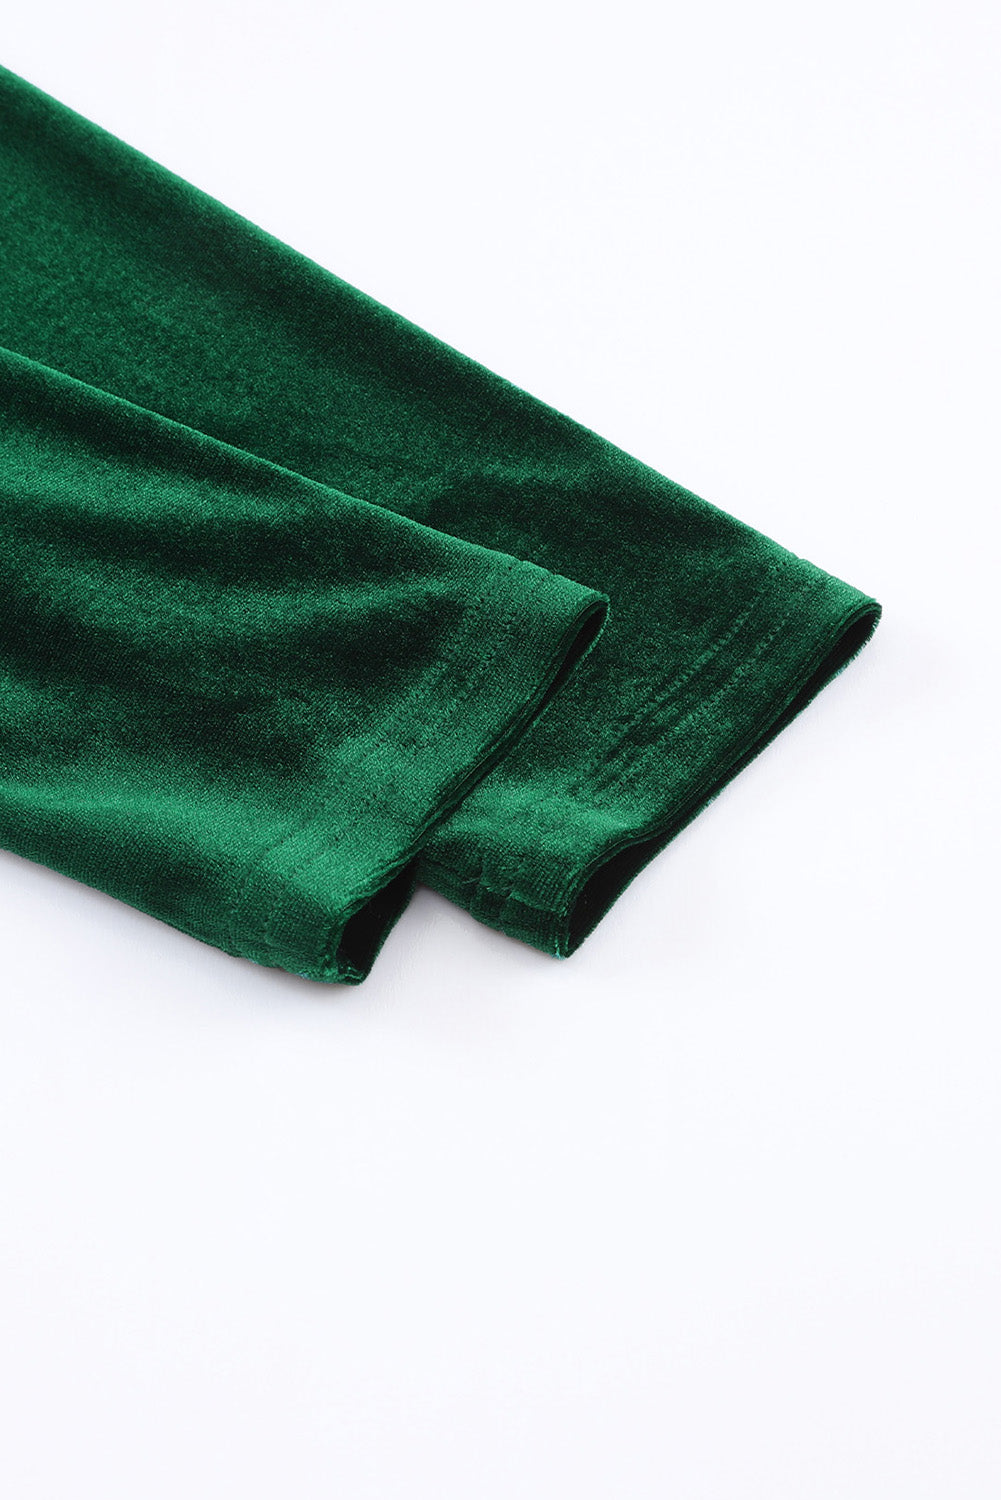 Green Frill Trim Long Sleeve Stand Neck Velvet Dress Dresses JT's Designer Fashion